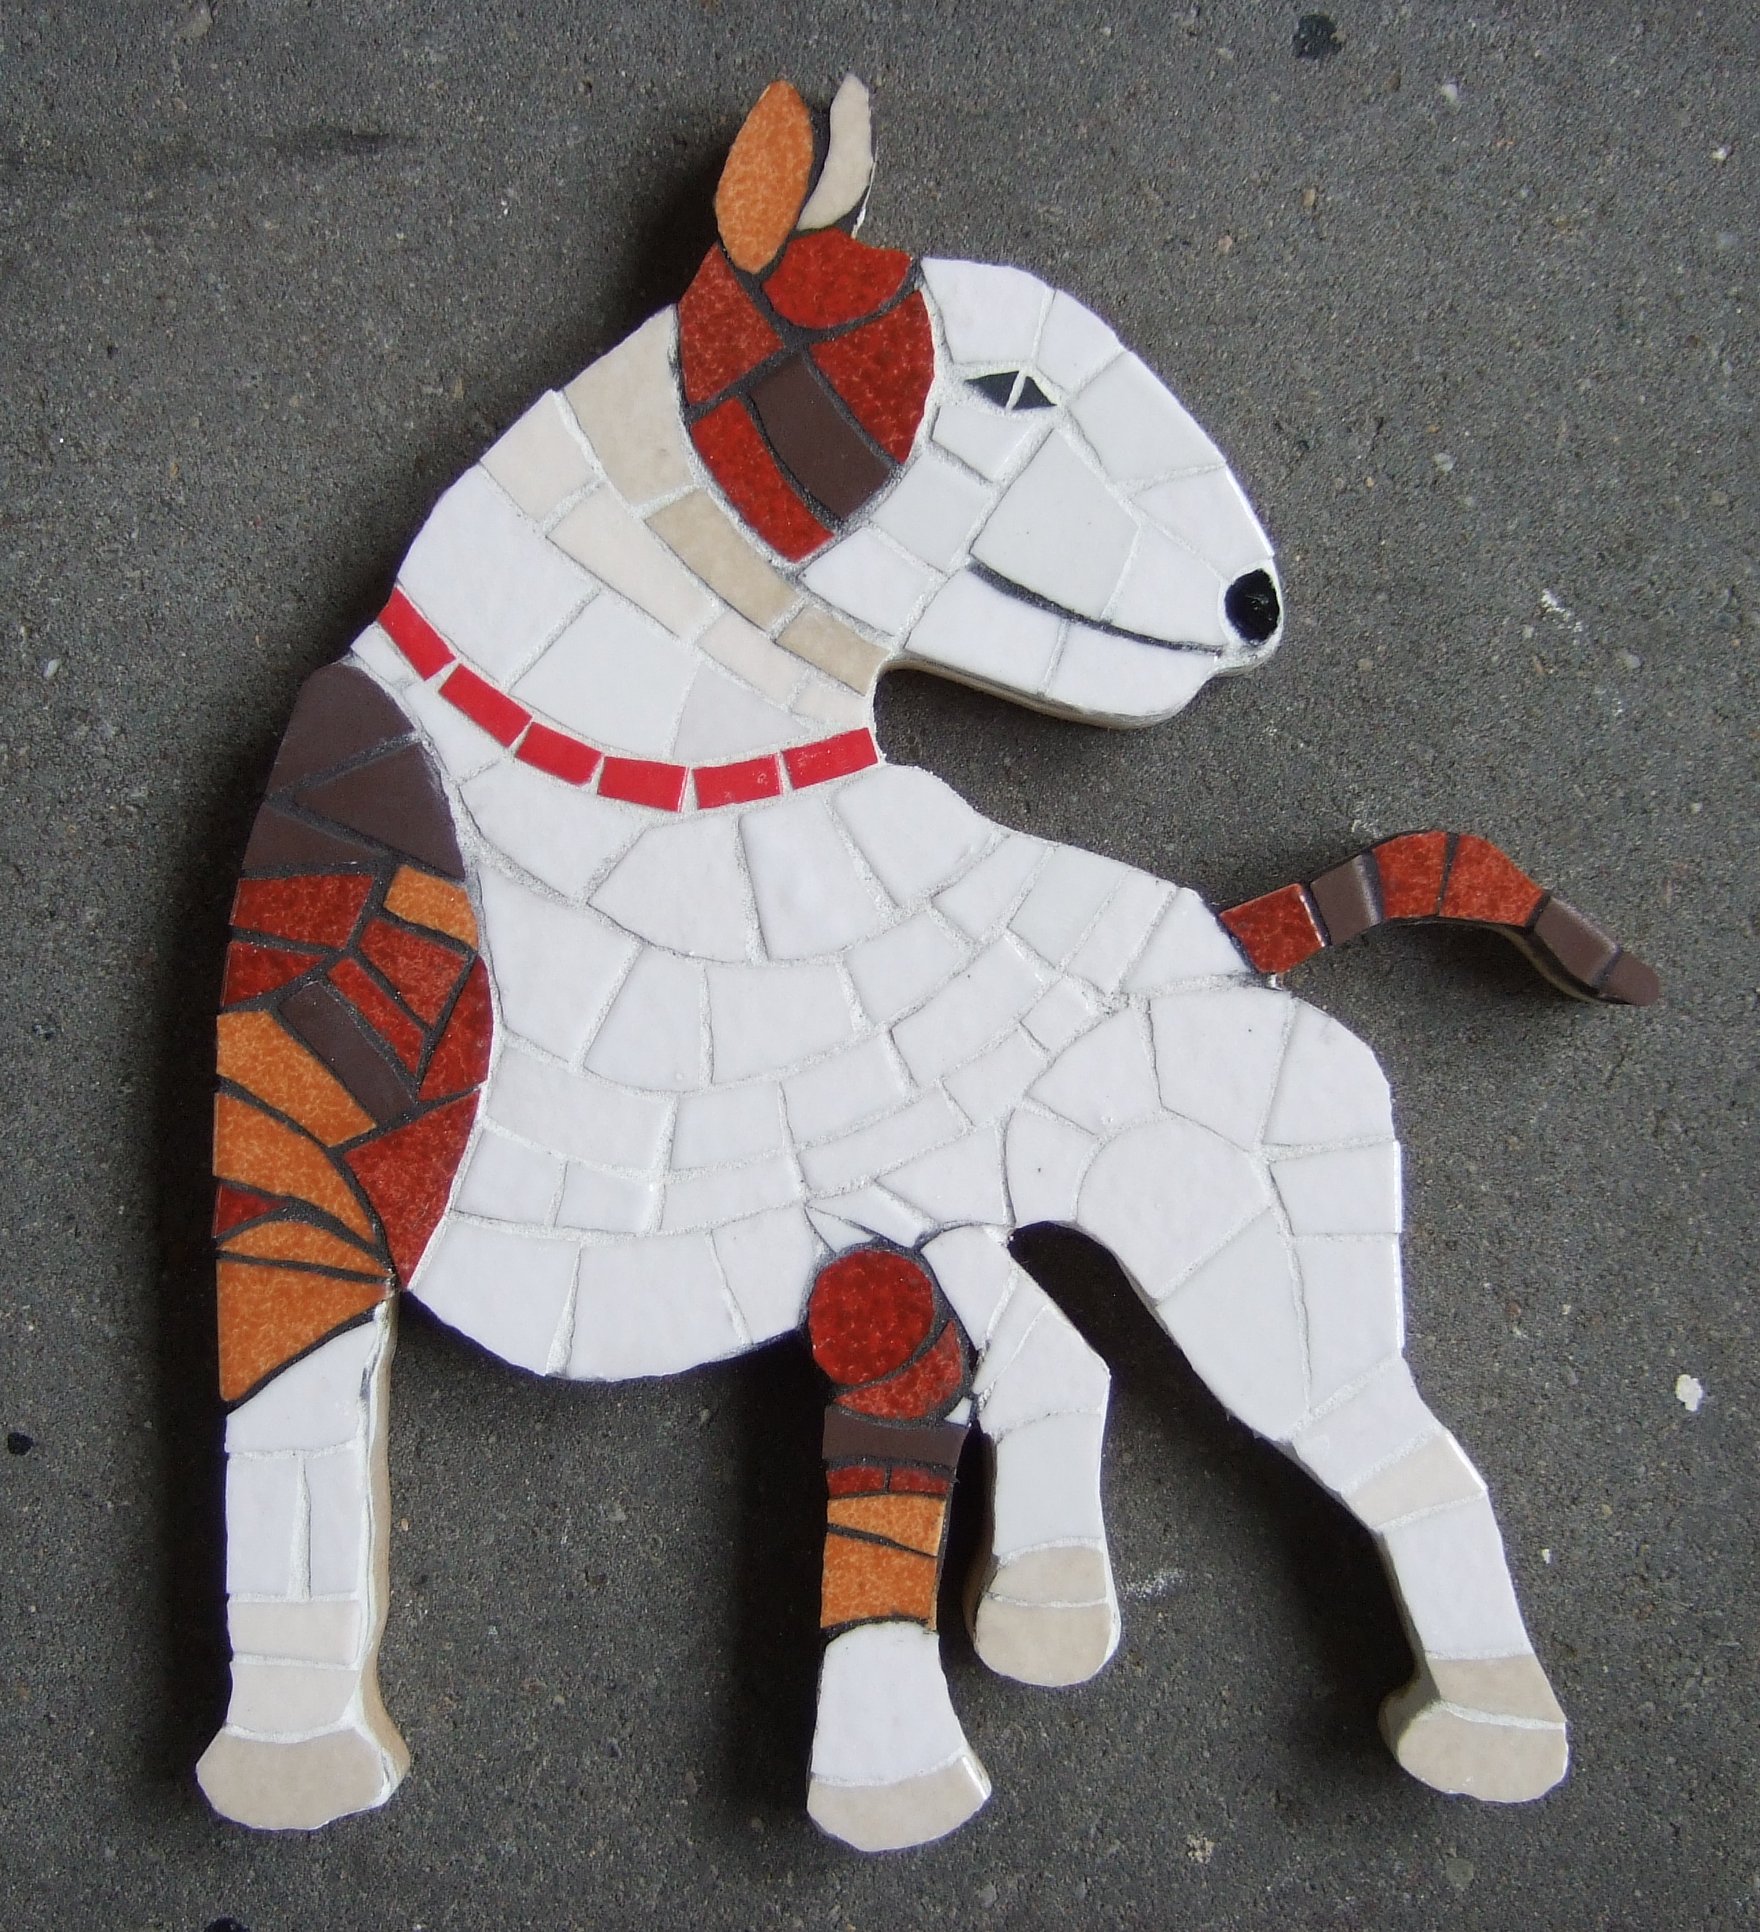 In de workshop dierenmozaiek maak je een mozaiek van je eigen huisdier.